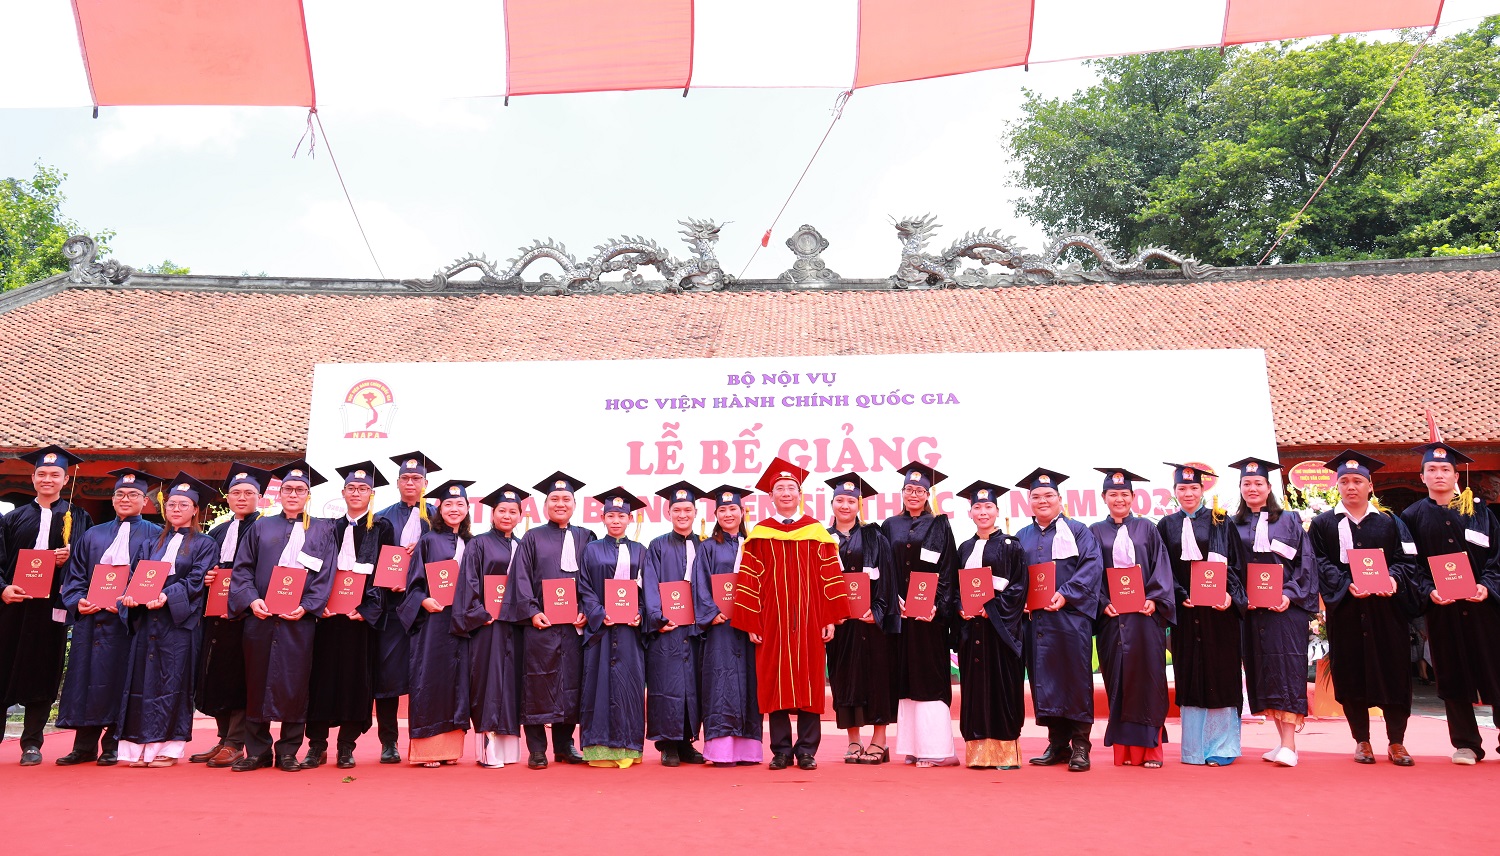 Giám đốc Học viện Hành chính Quốc gia Nguyễn Bá Chiến công nhận học vị và bằng tốt nghiệp tới các Tân Thạc sĩ.